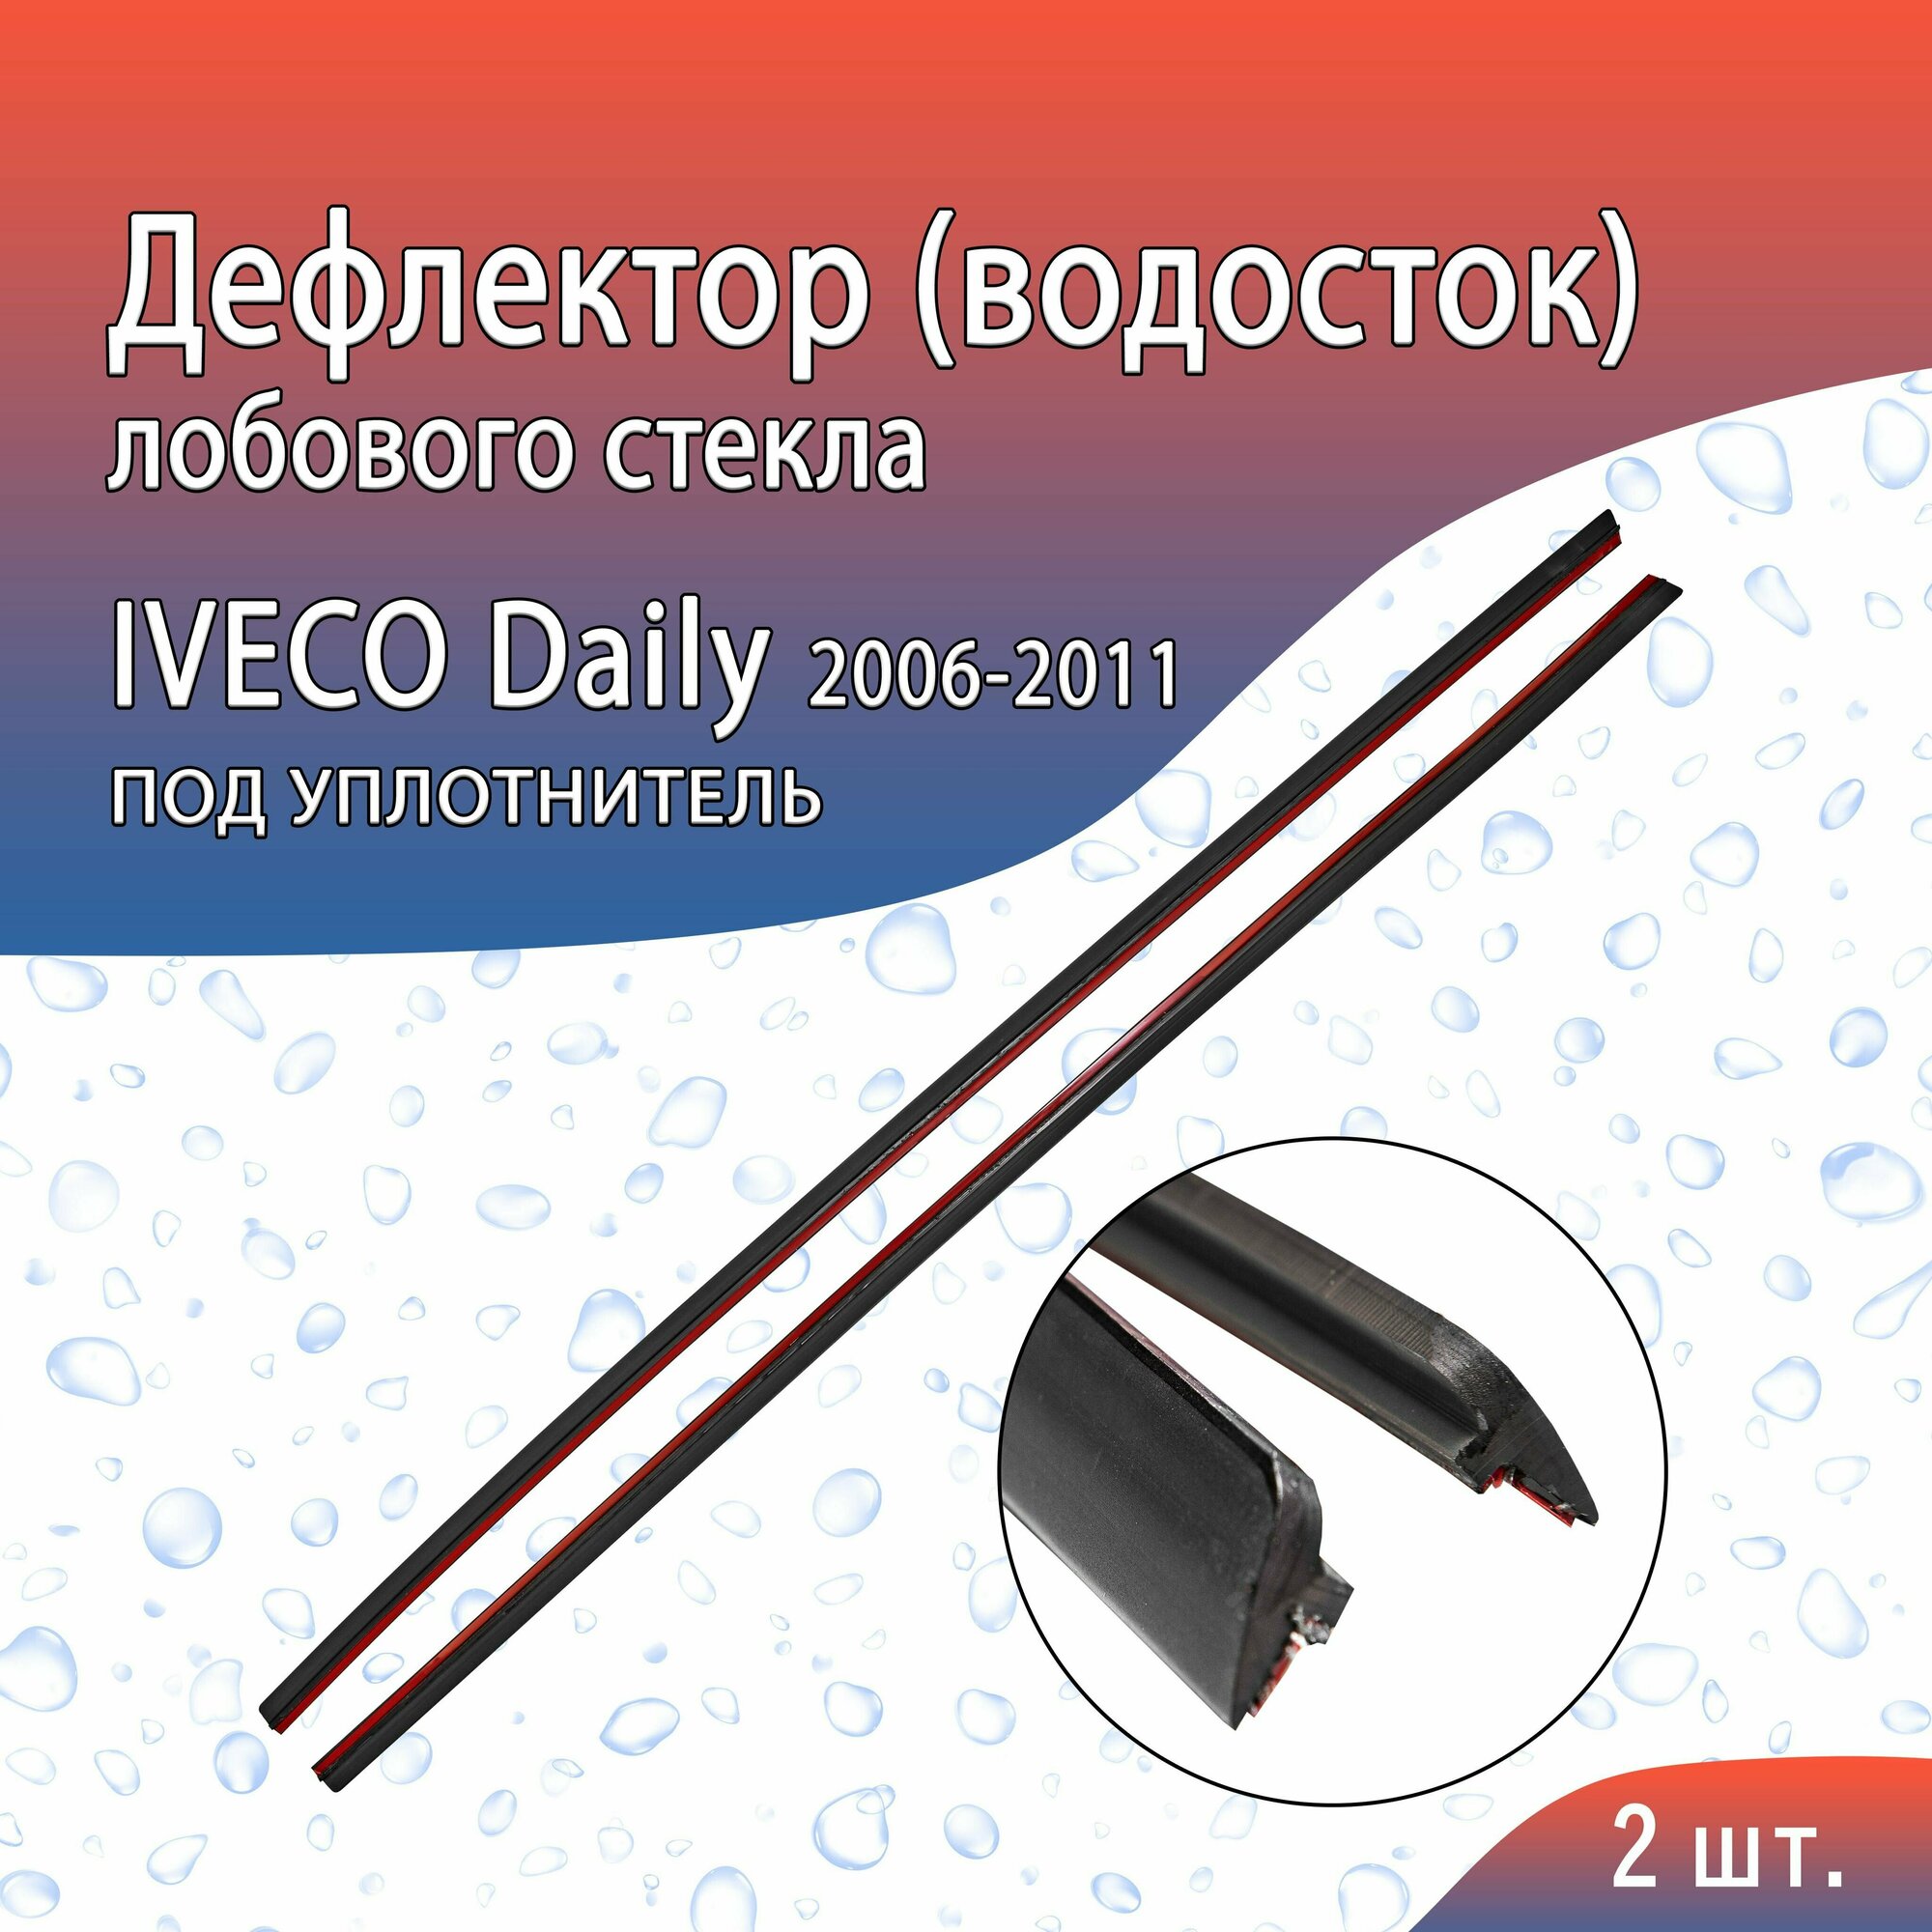 Водосток (дефлектор) лобового стекла под уплотнитель IVECO Daily (2006-2011г. в.)/ Ивеко Дейли IV